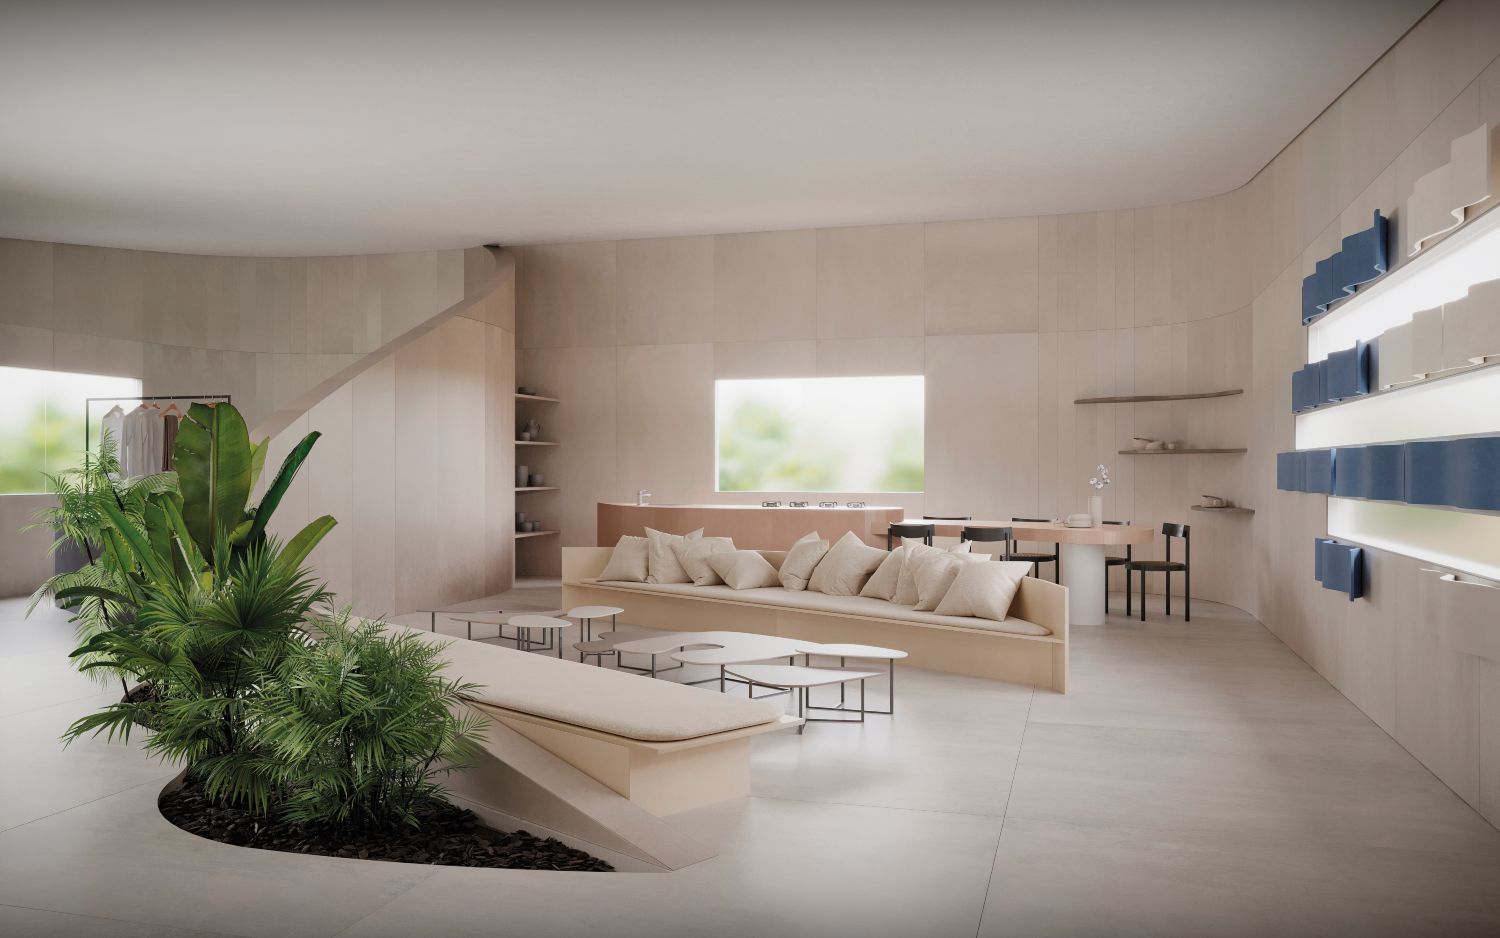 Design de móveis é capaz de projetar mobiliário para toda a casa (Projeto: Rodrigo Ohtake)